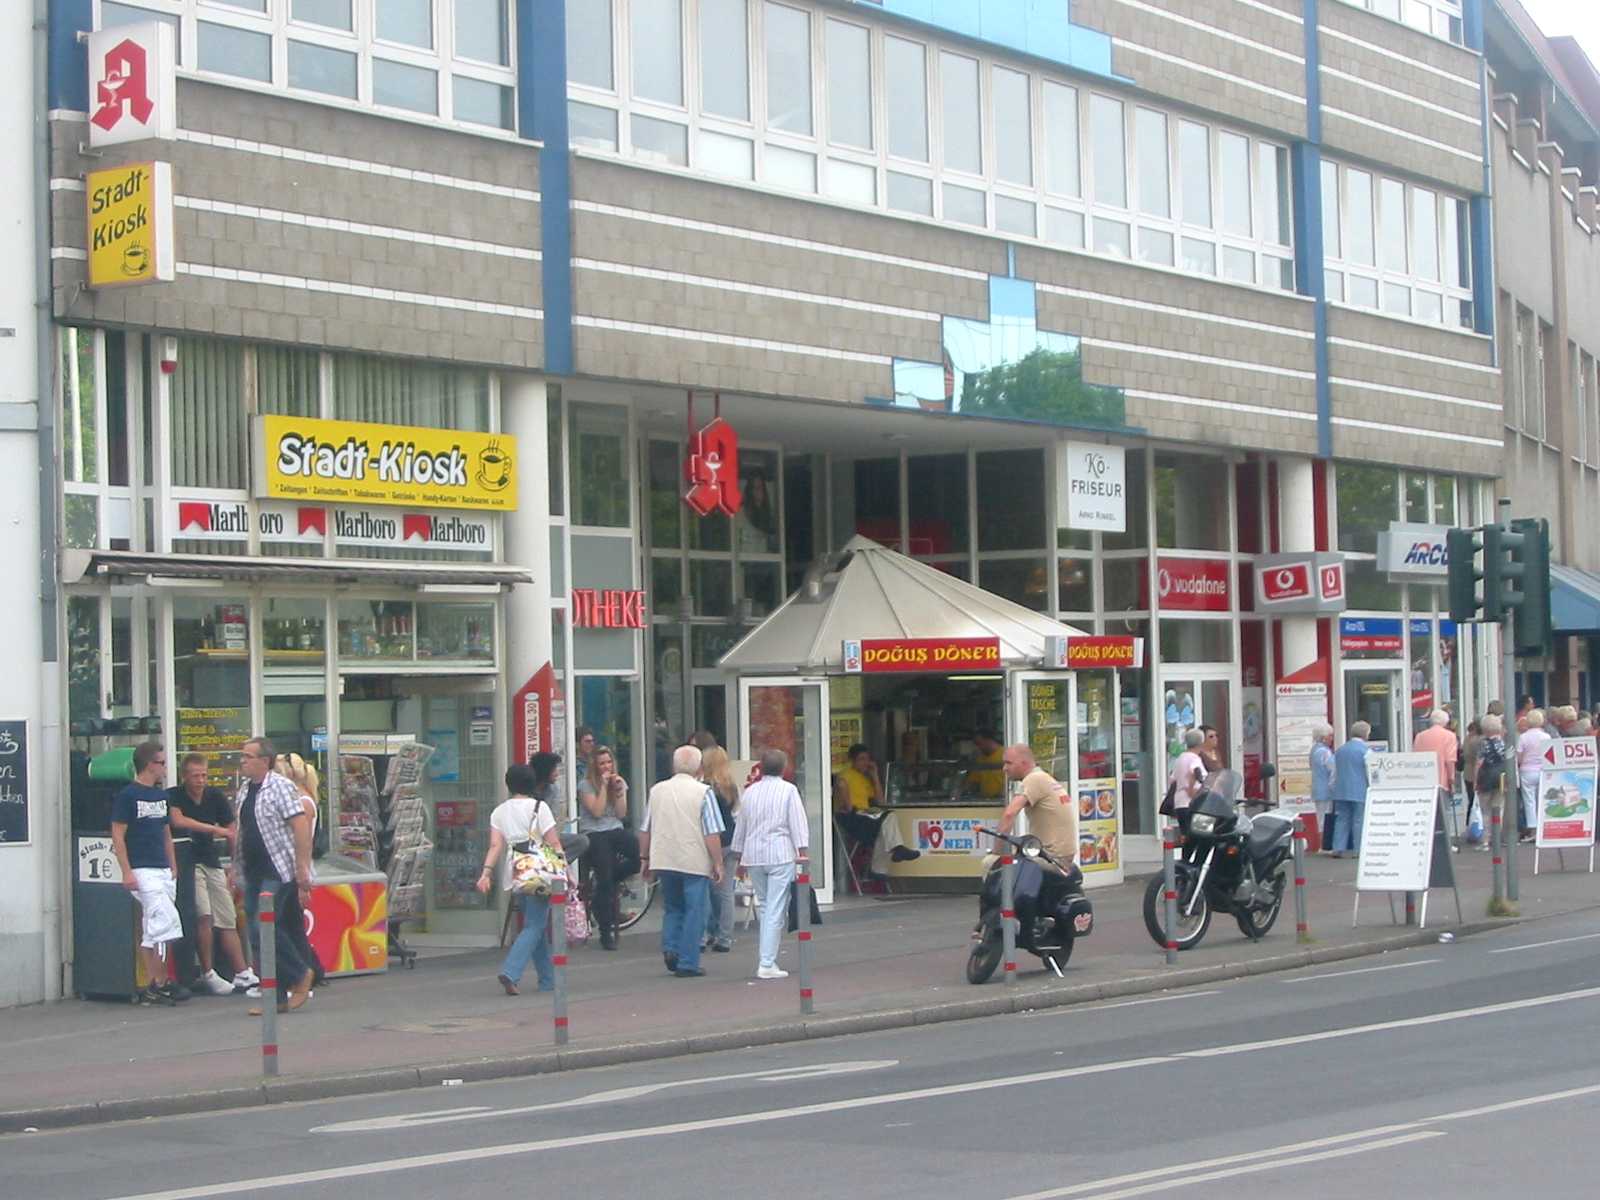 Ladenlokal gegenüber dem Busbahnhof in der Innenstadt von Moers